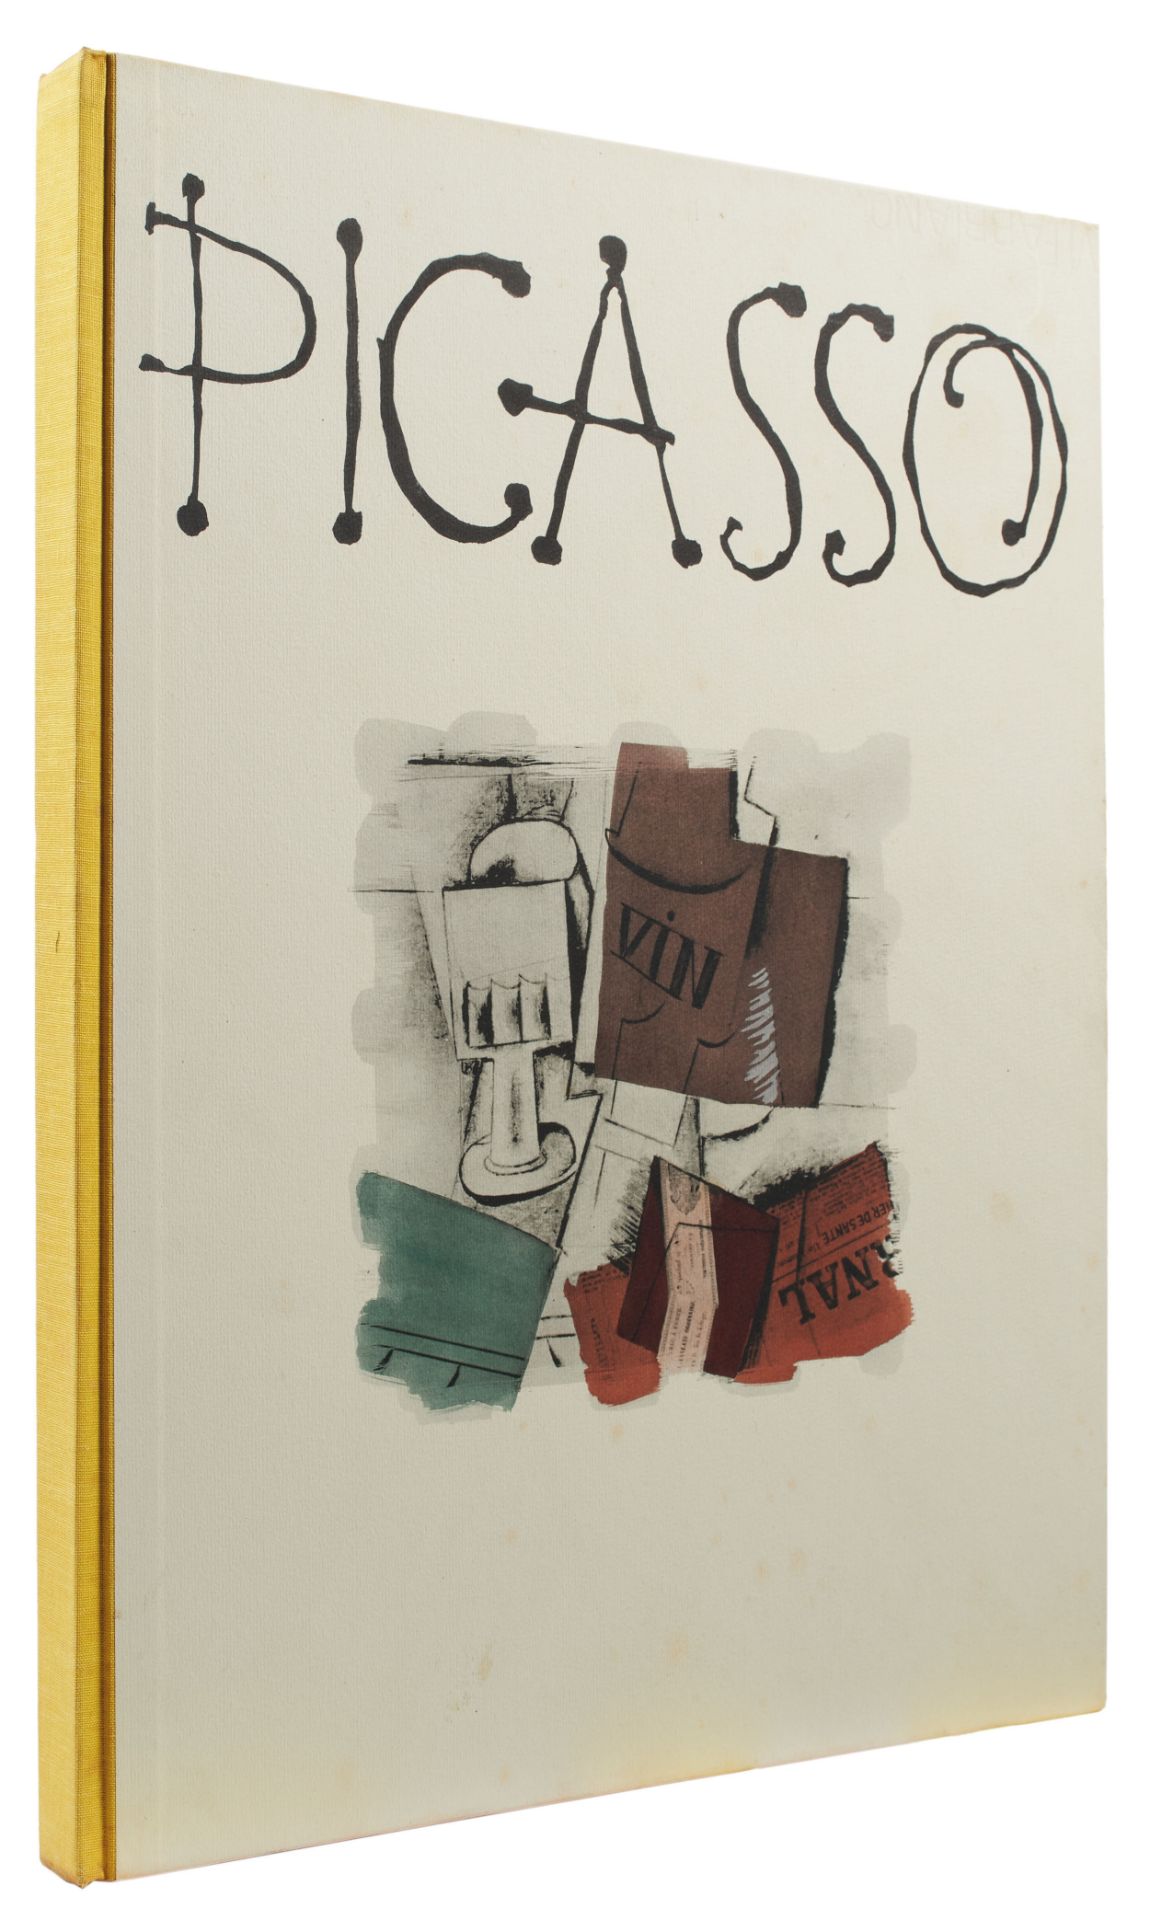 PICASSO, Pablo (1881-1973); RUSSOLI, Franco (1923-1977). Picasso Venti Pochoirs Originali. Milan: